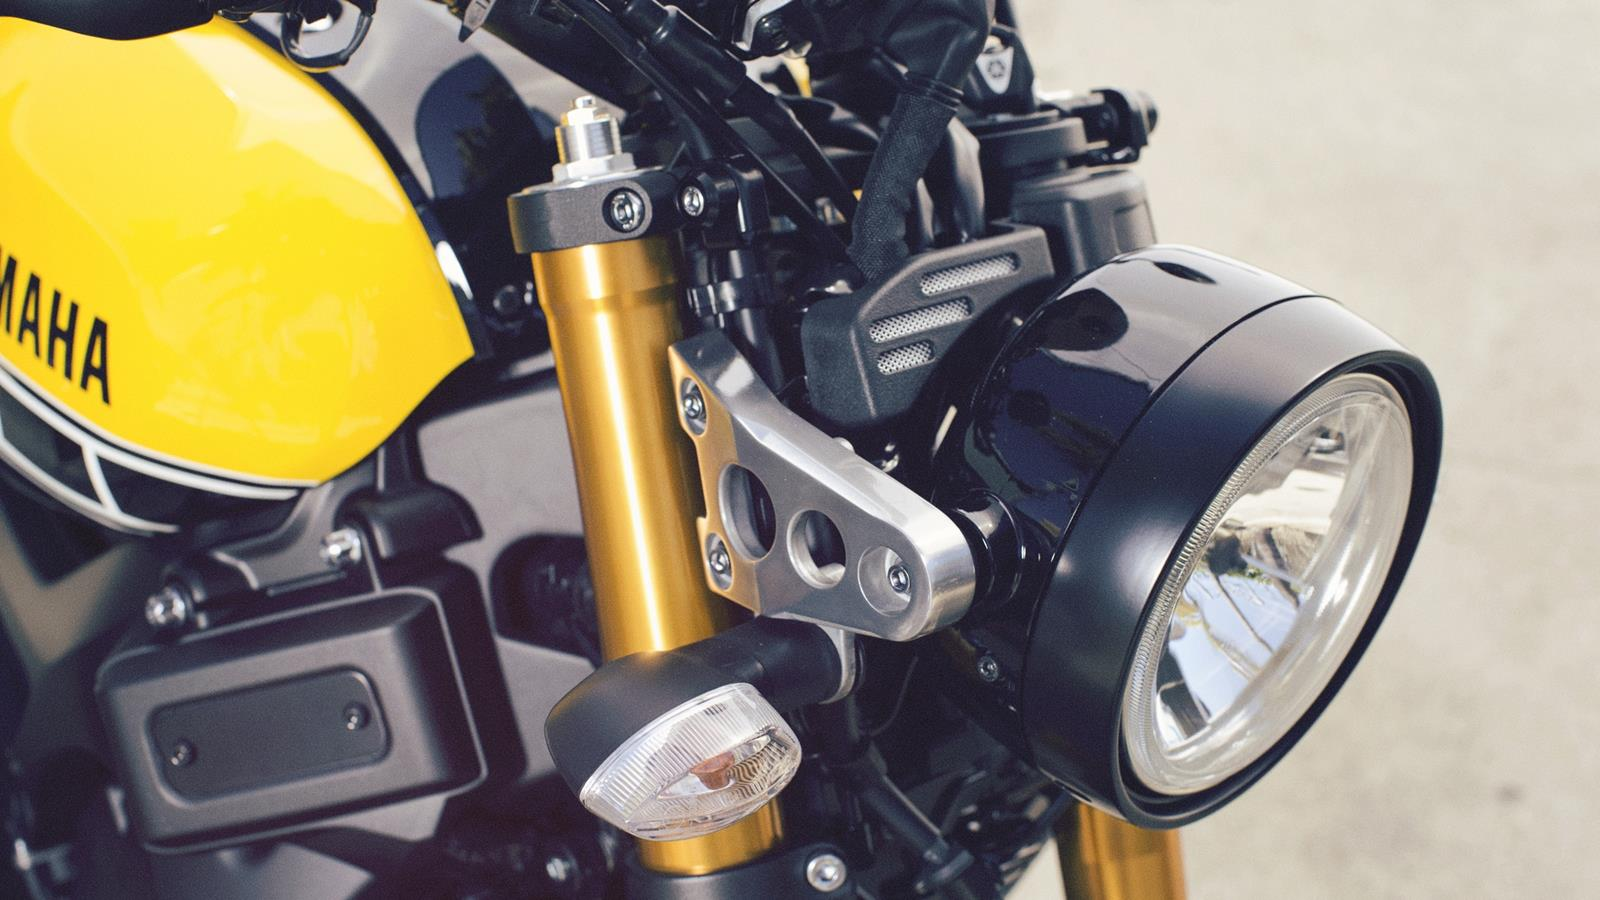 XSR900 Időt álló, letisztult tervezés, tisztelve a történelmi ikonokat Az XSR900 időtálló, letisztult tervezése tiszteleg a múlt ikonikus motorkerékpárjai előtt.